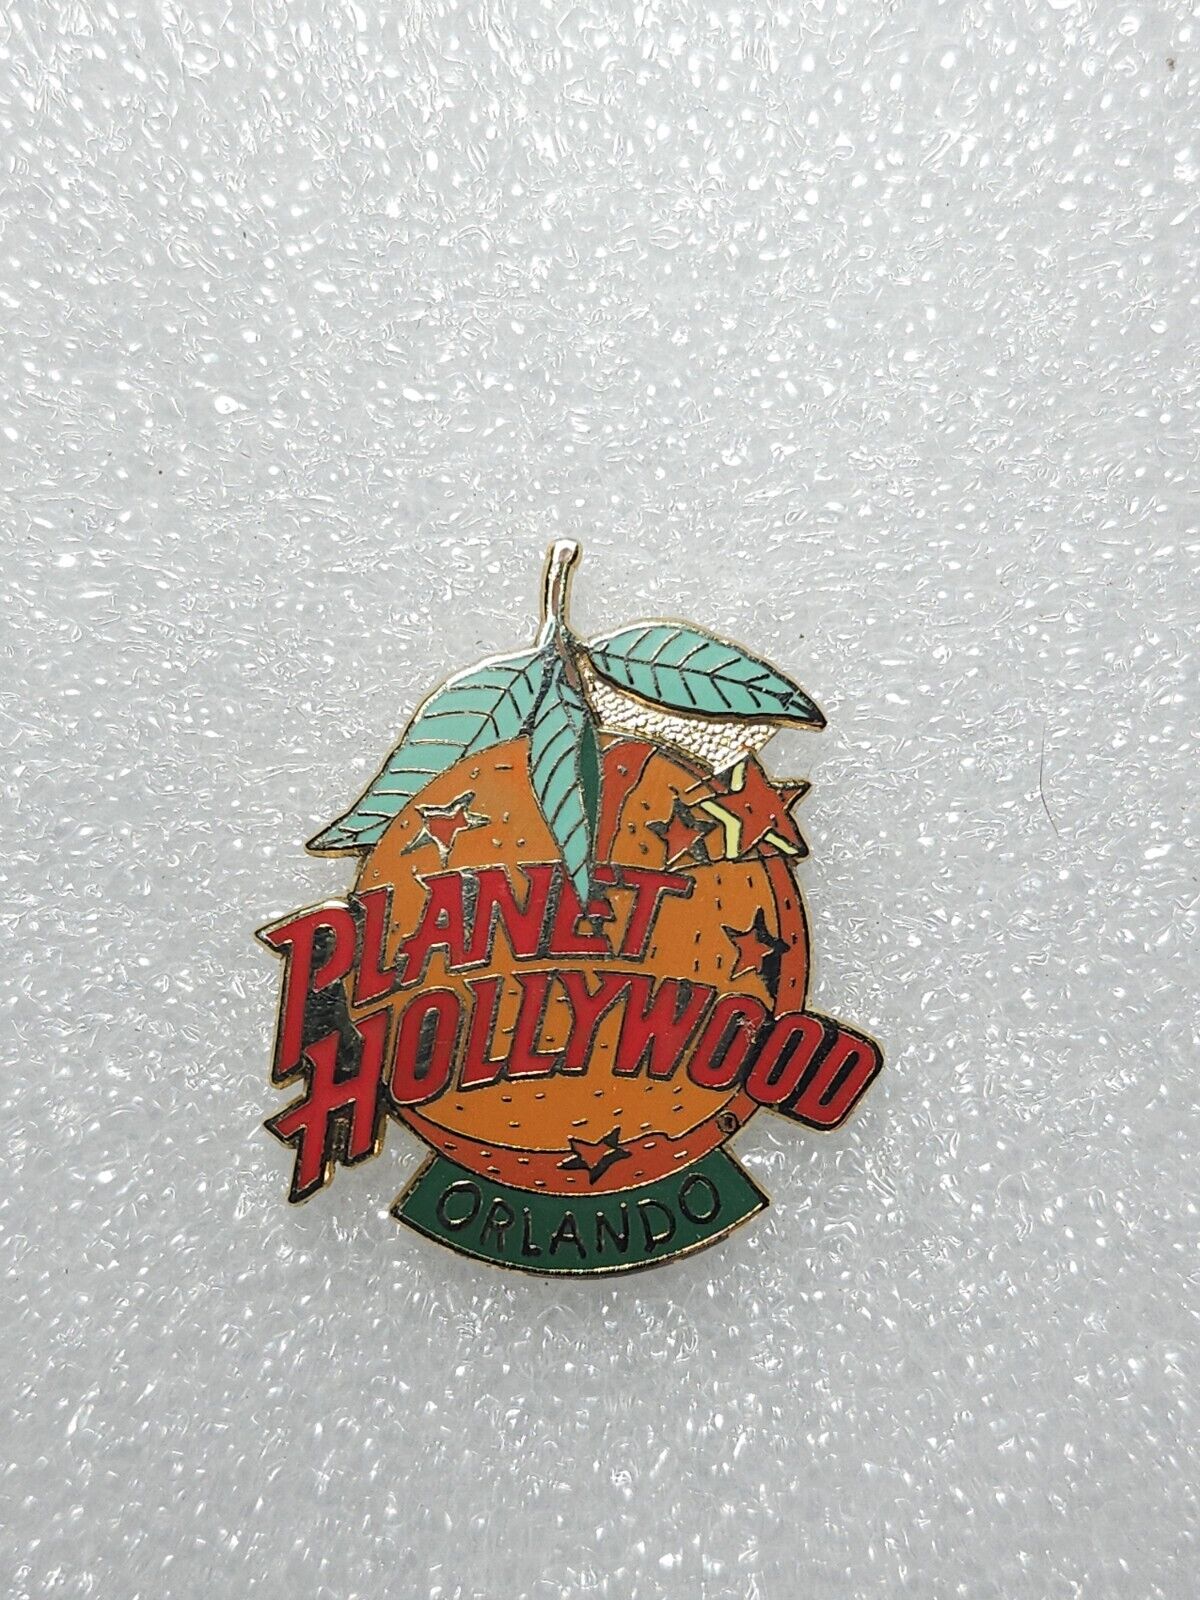 Planet Hollywood Orlando, Orange  Lapel Pin Pinback Vintage 